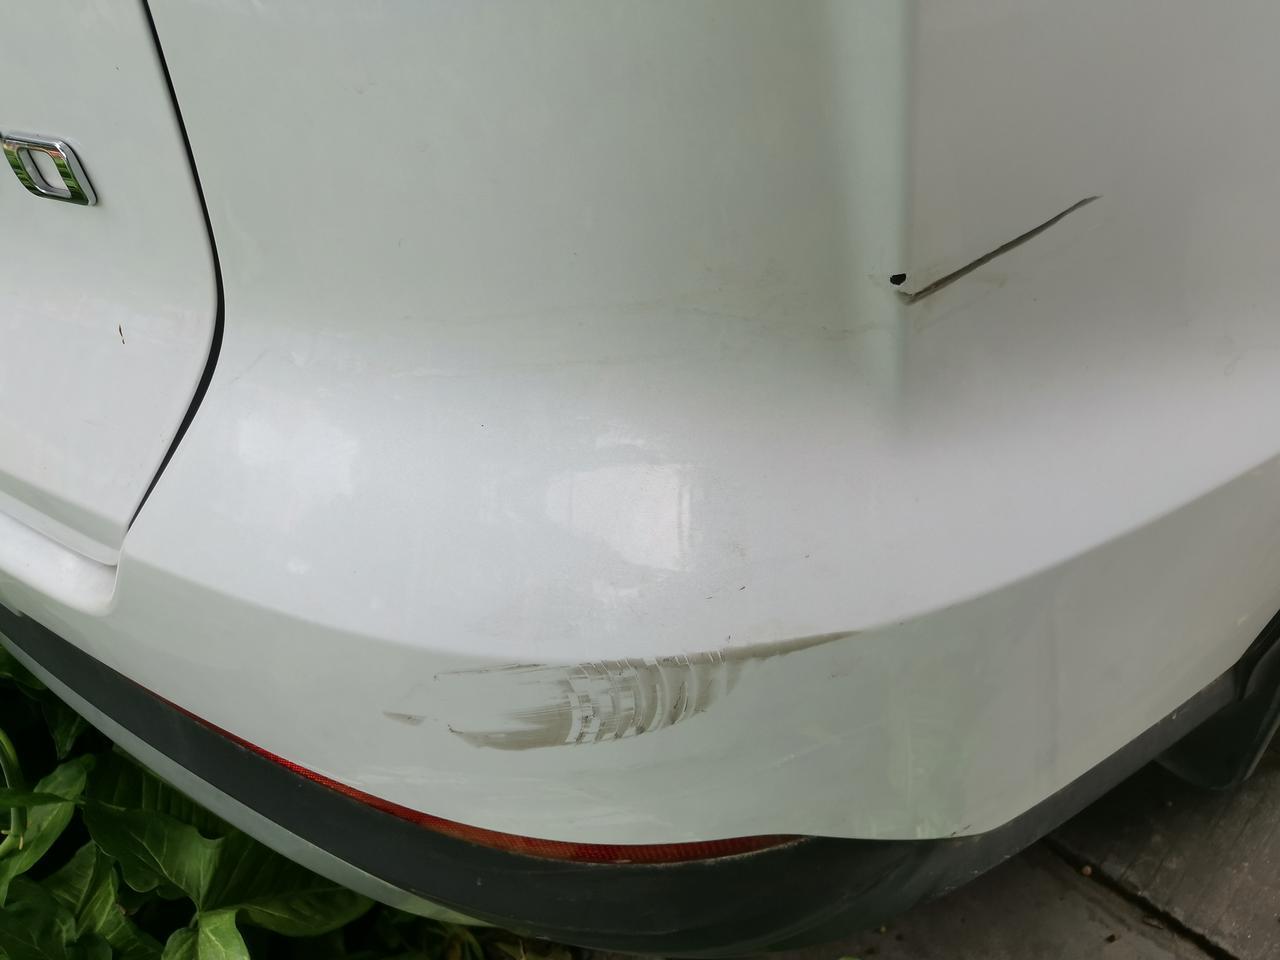 宋pro车友们，这个黑圈是伤到底漆了吗，修复大概要多少钱啊？还有一些小刮痕